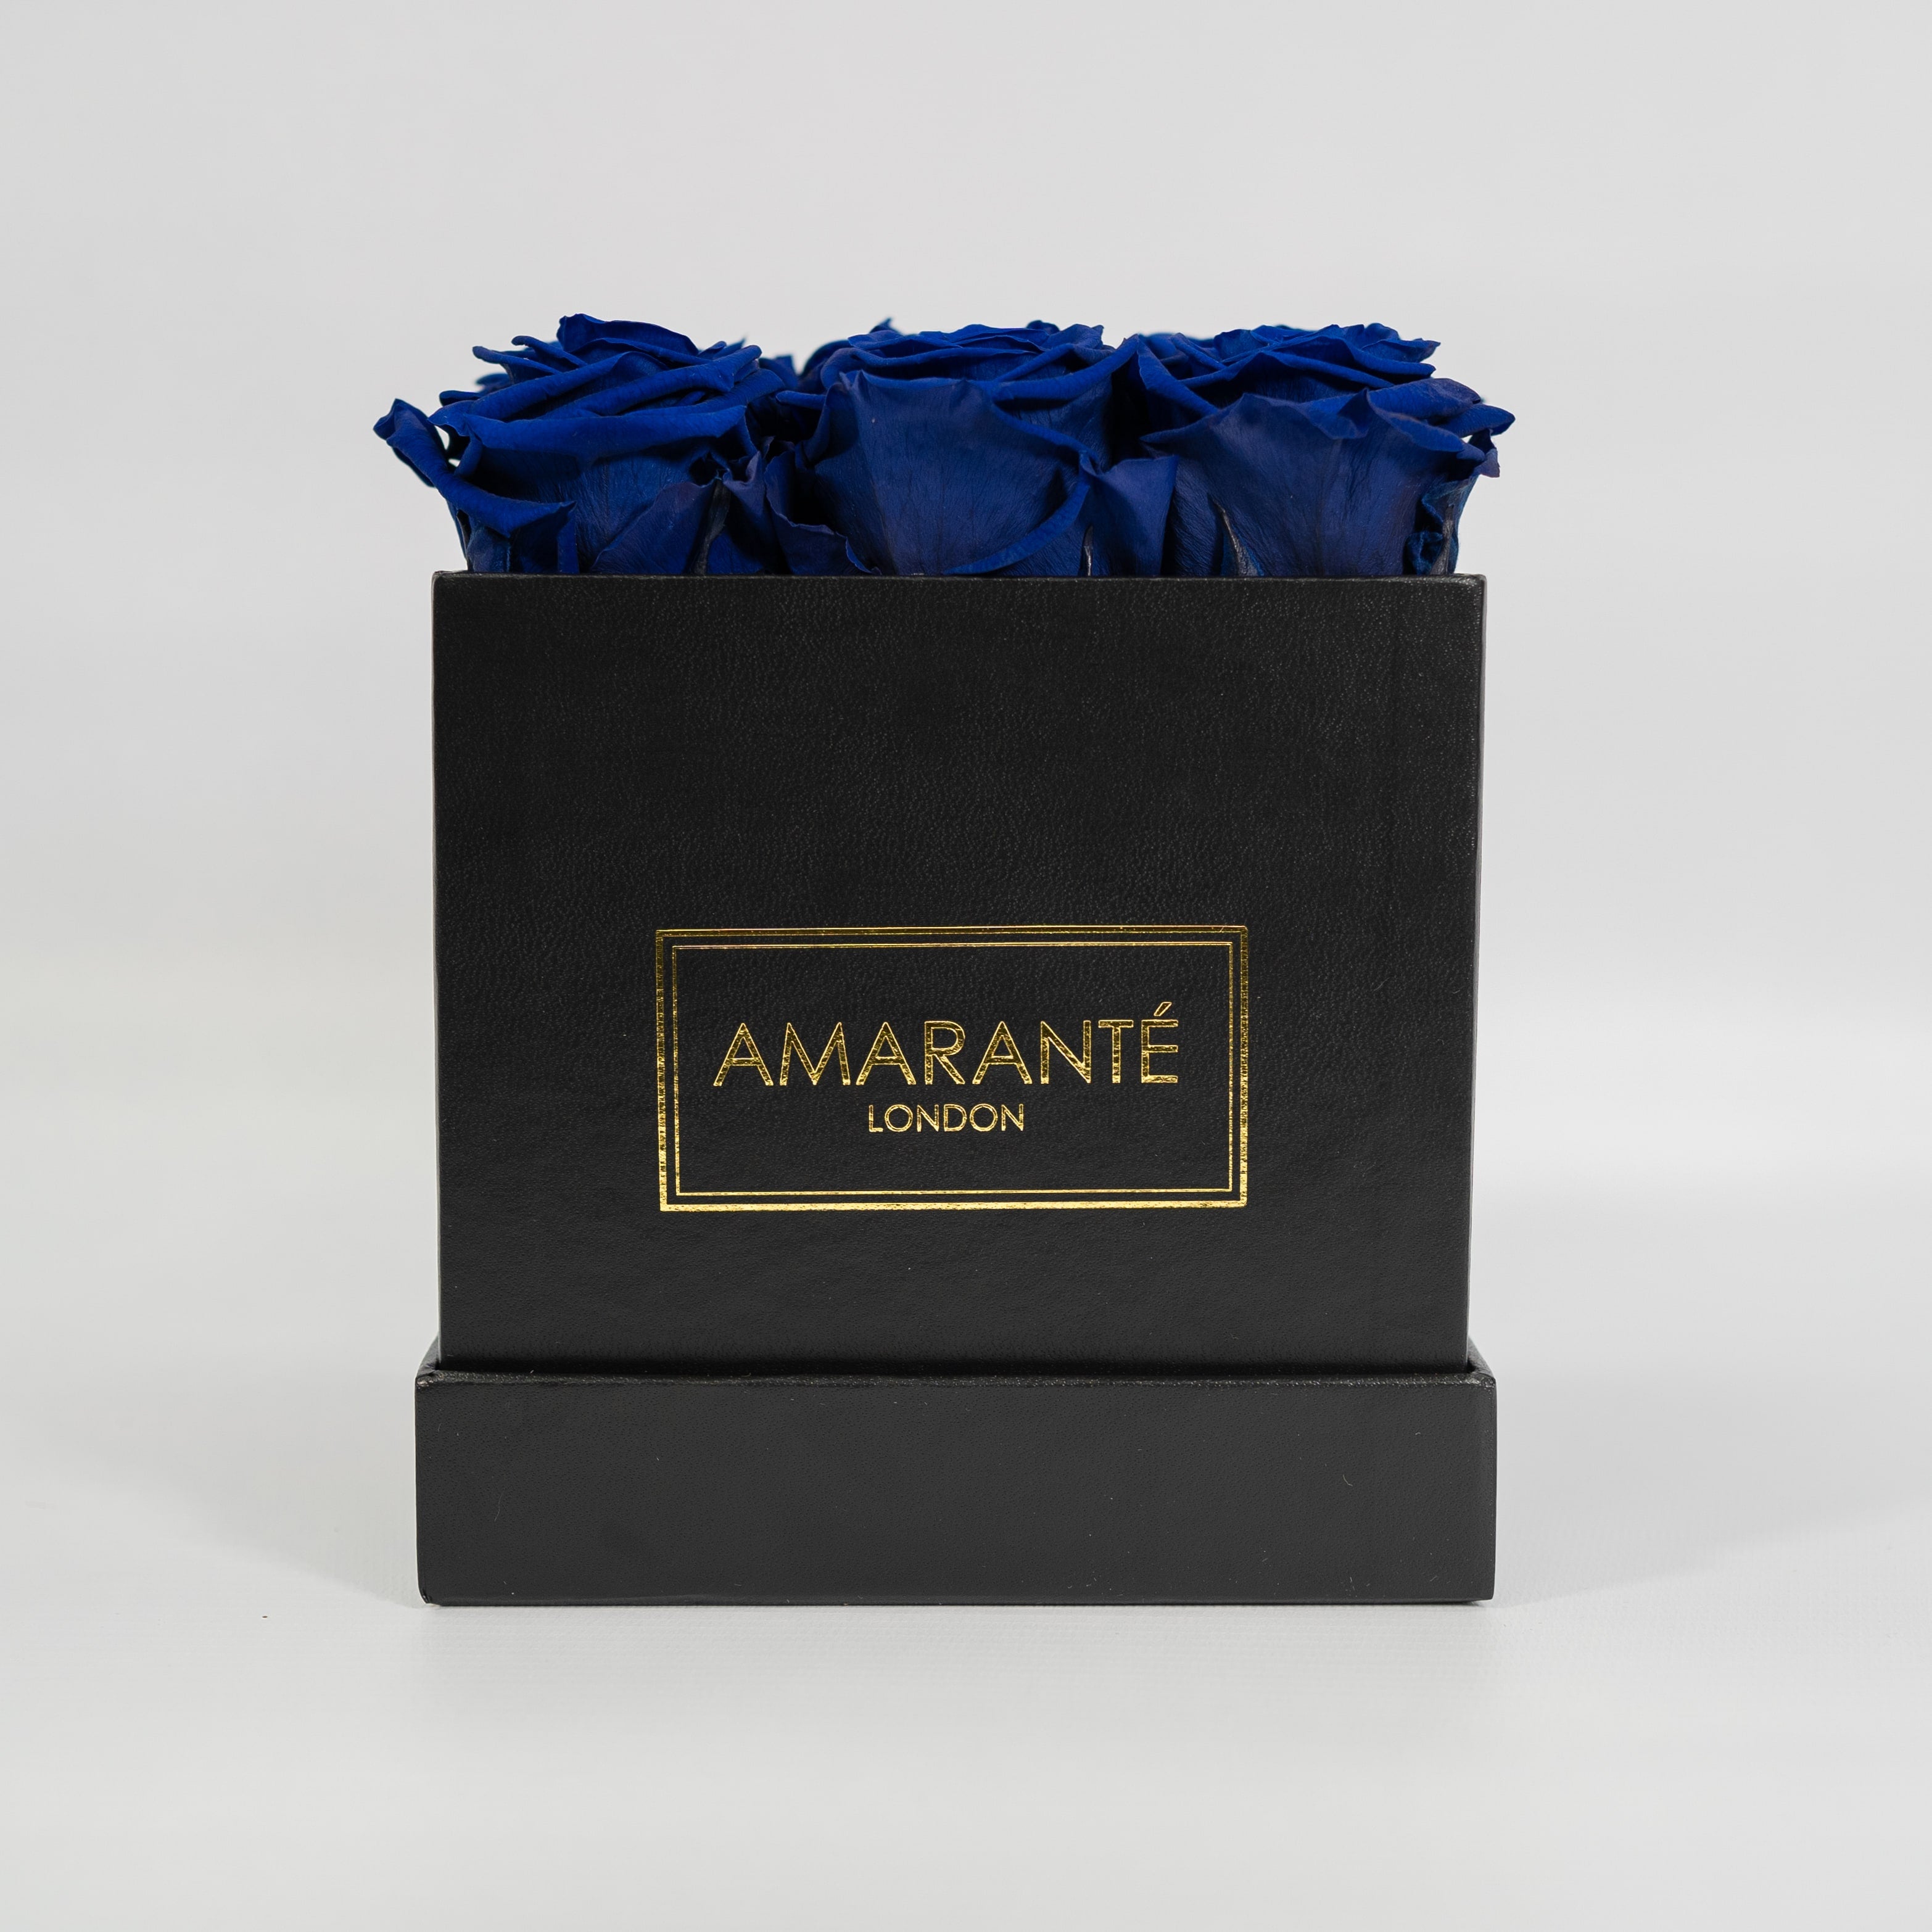 Majestic royal blue roses in a dapper black box